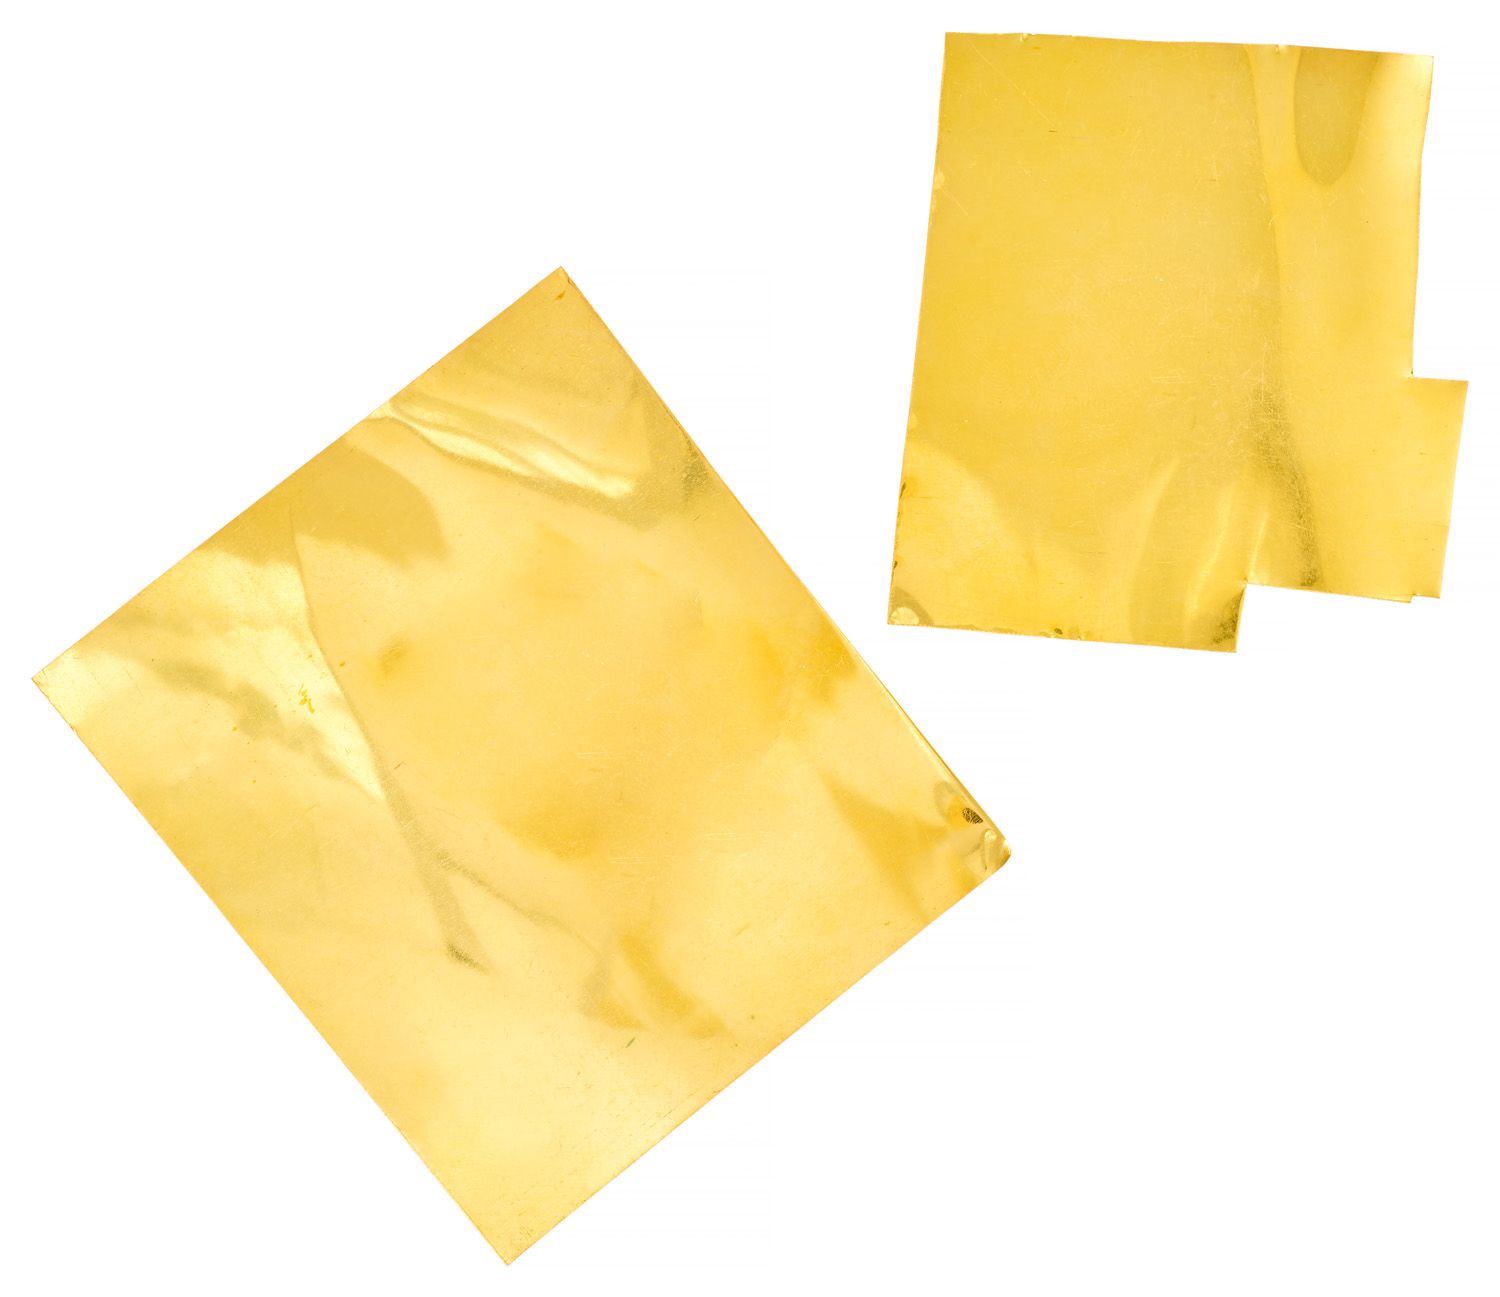 Plaques de soudure Soldering plate in 18K yellow gold